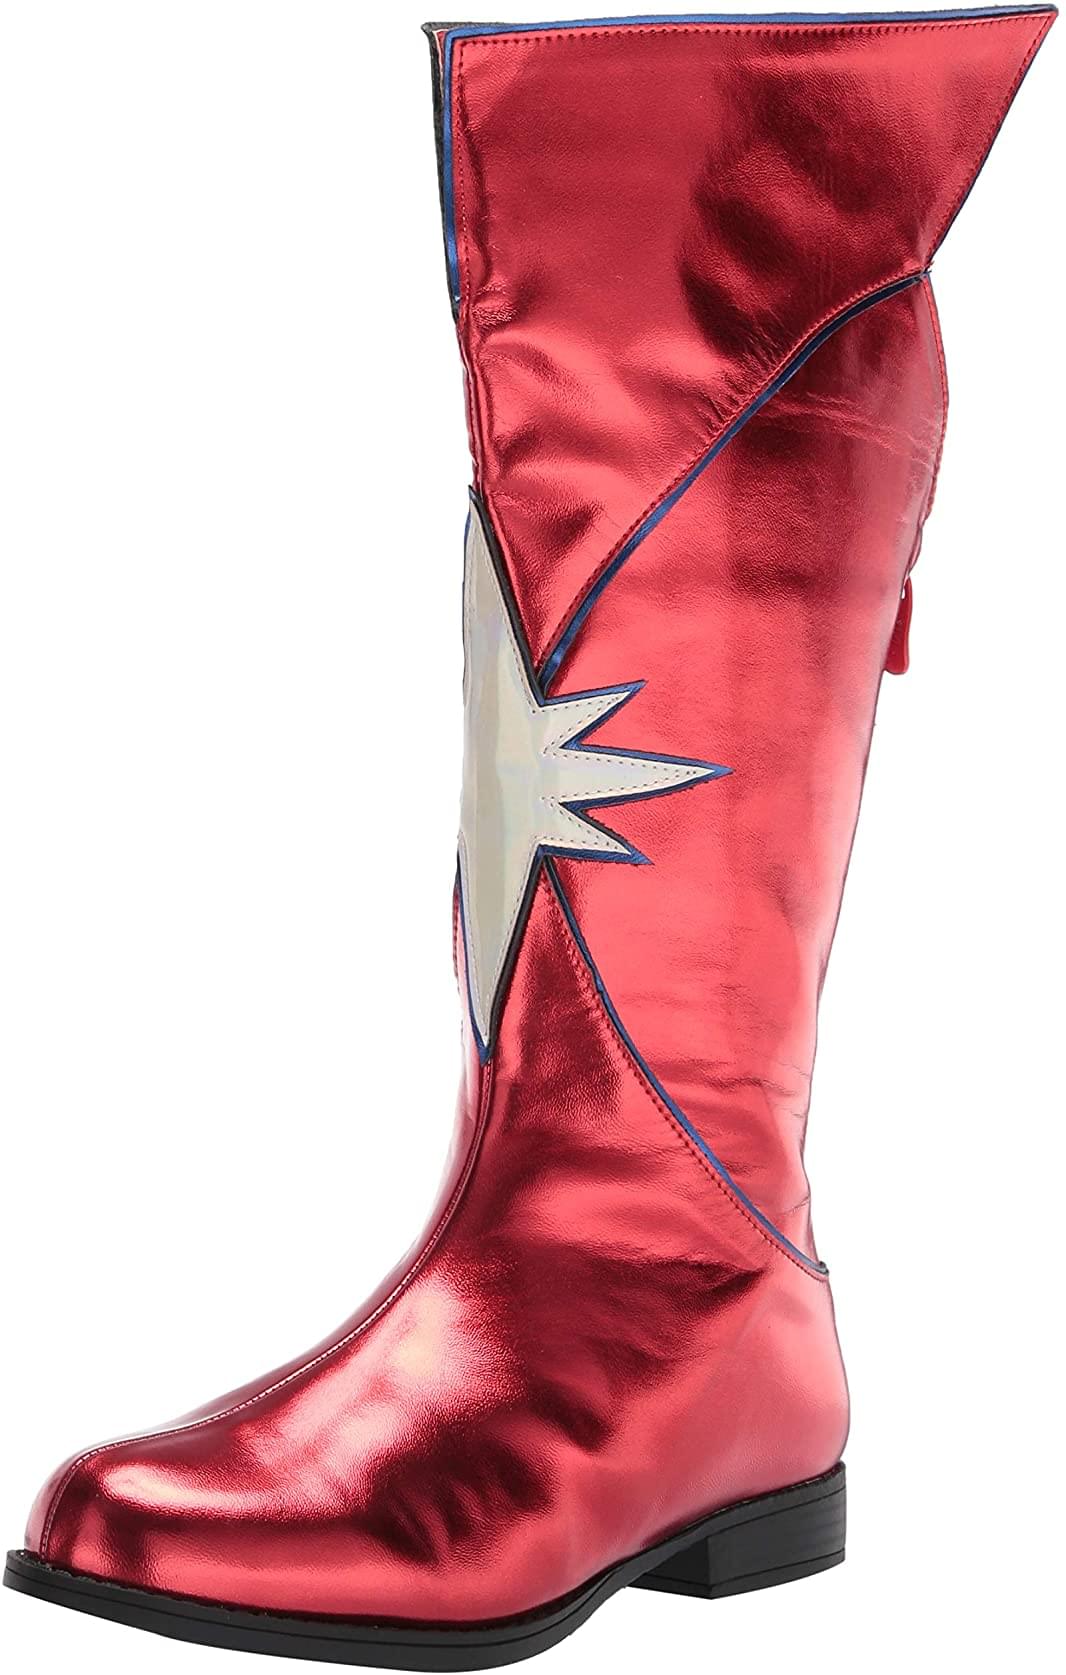 1.5" Heel Women's Knee High Superhero Boot Red